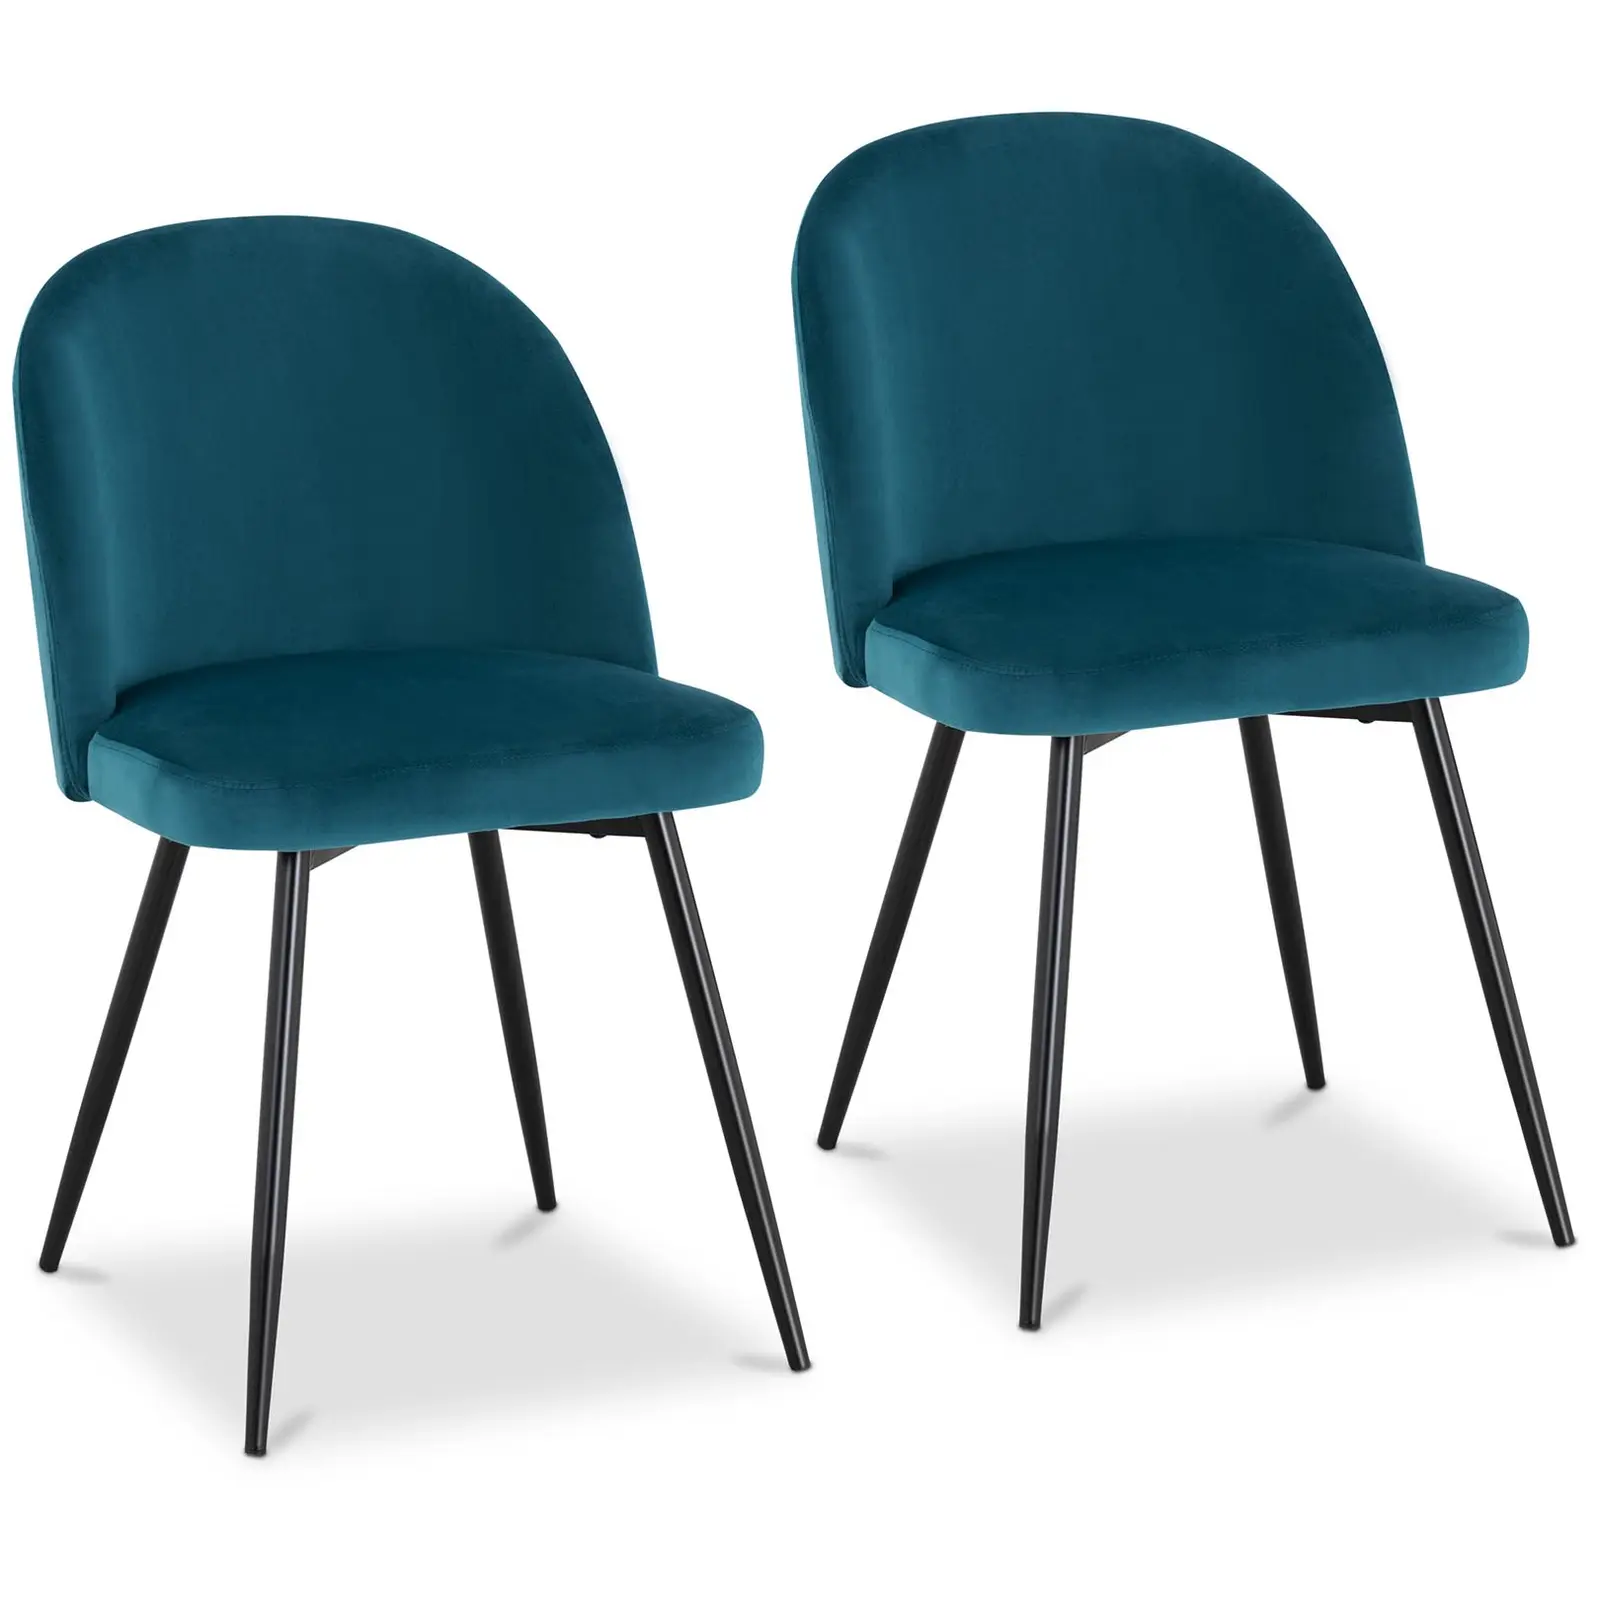 Καρέκλα με μαξιλάρια - σετ 2 - έως 150 κιλά - κάθισμα 48 x 41,5 cm - τιρκουάζ